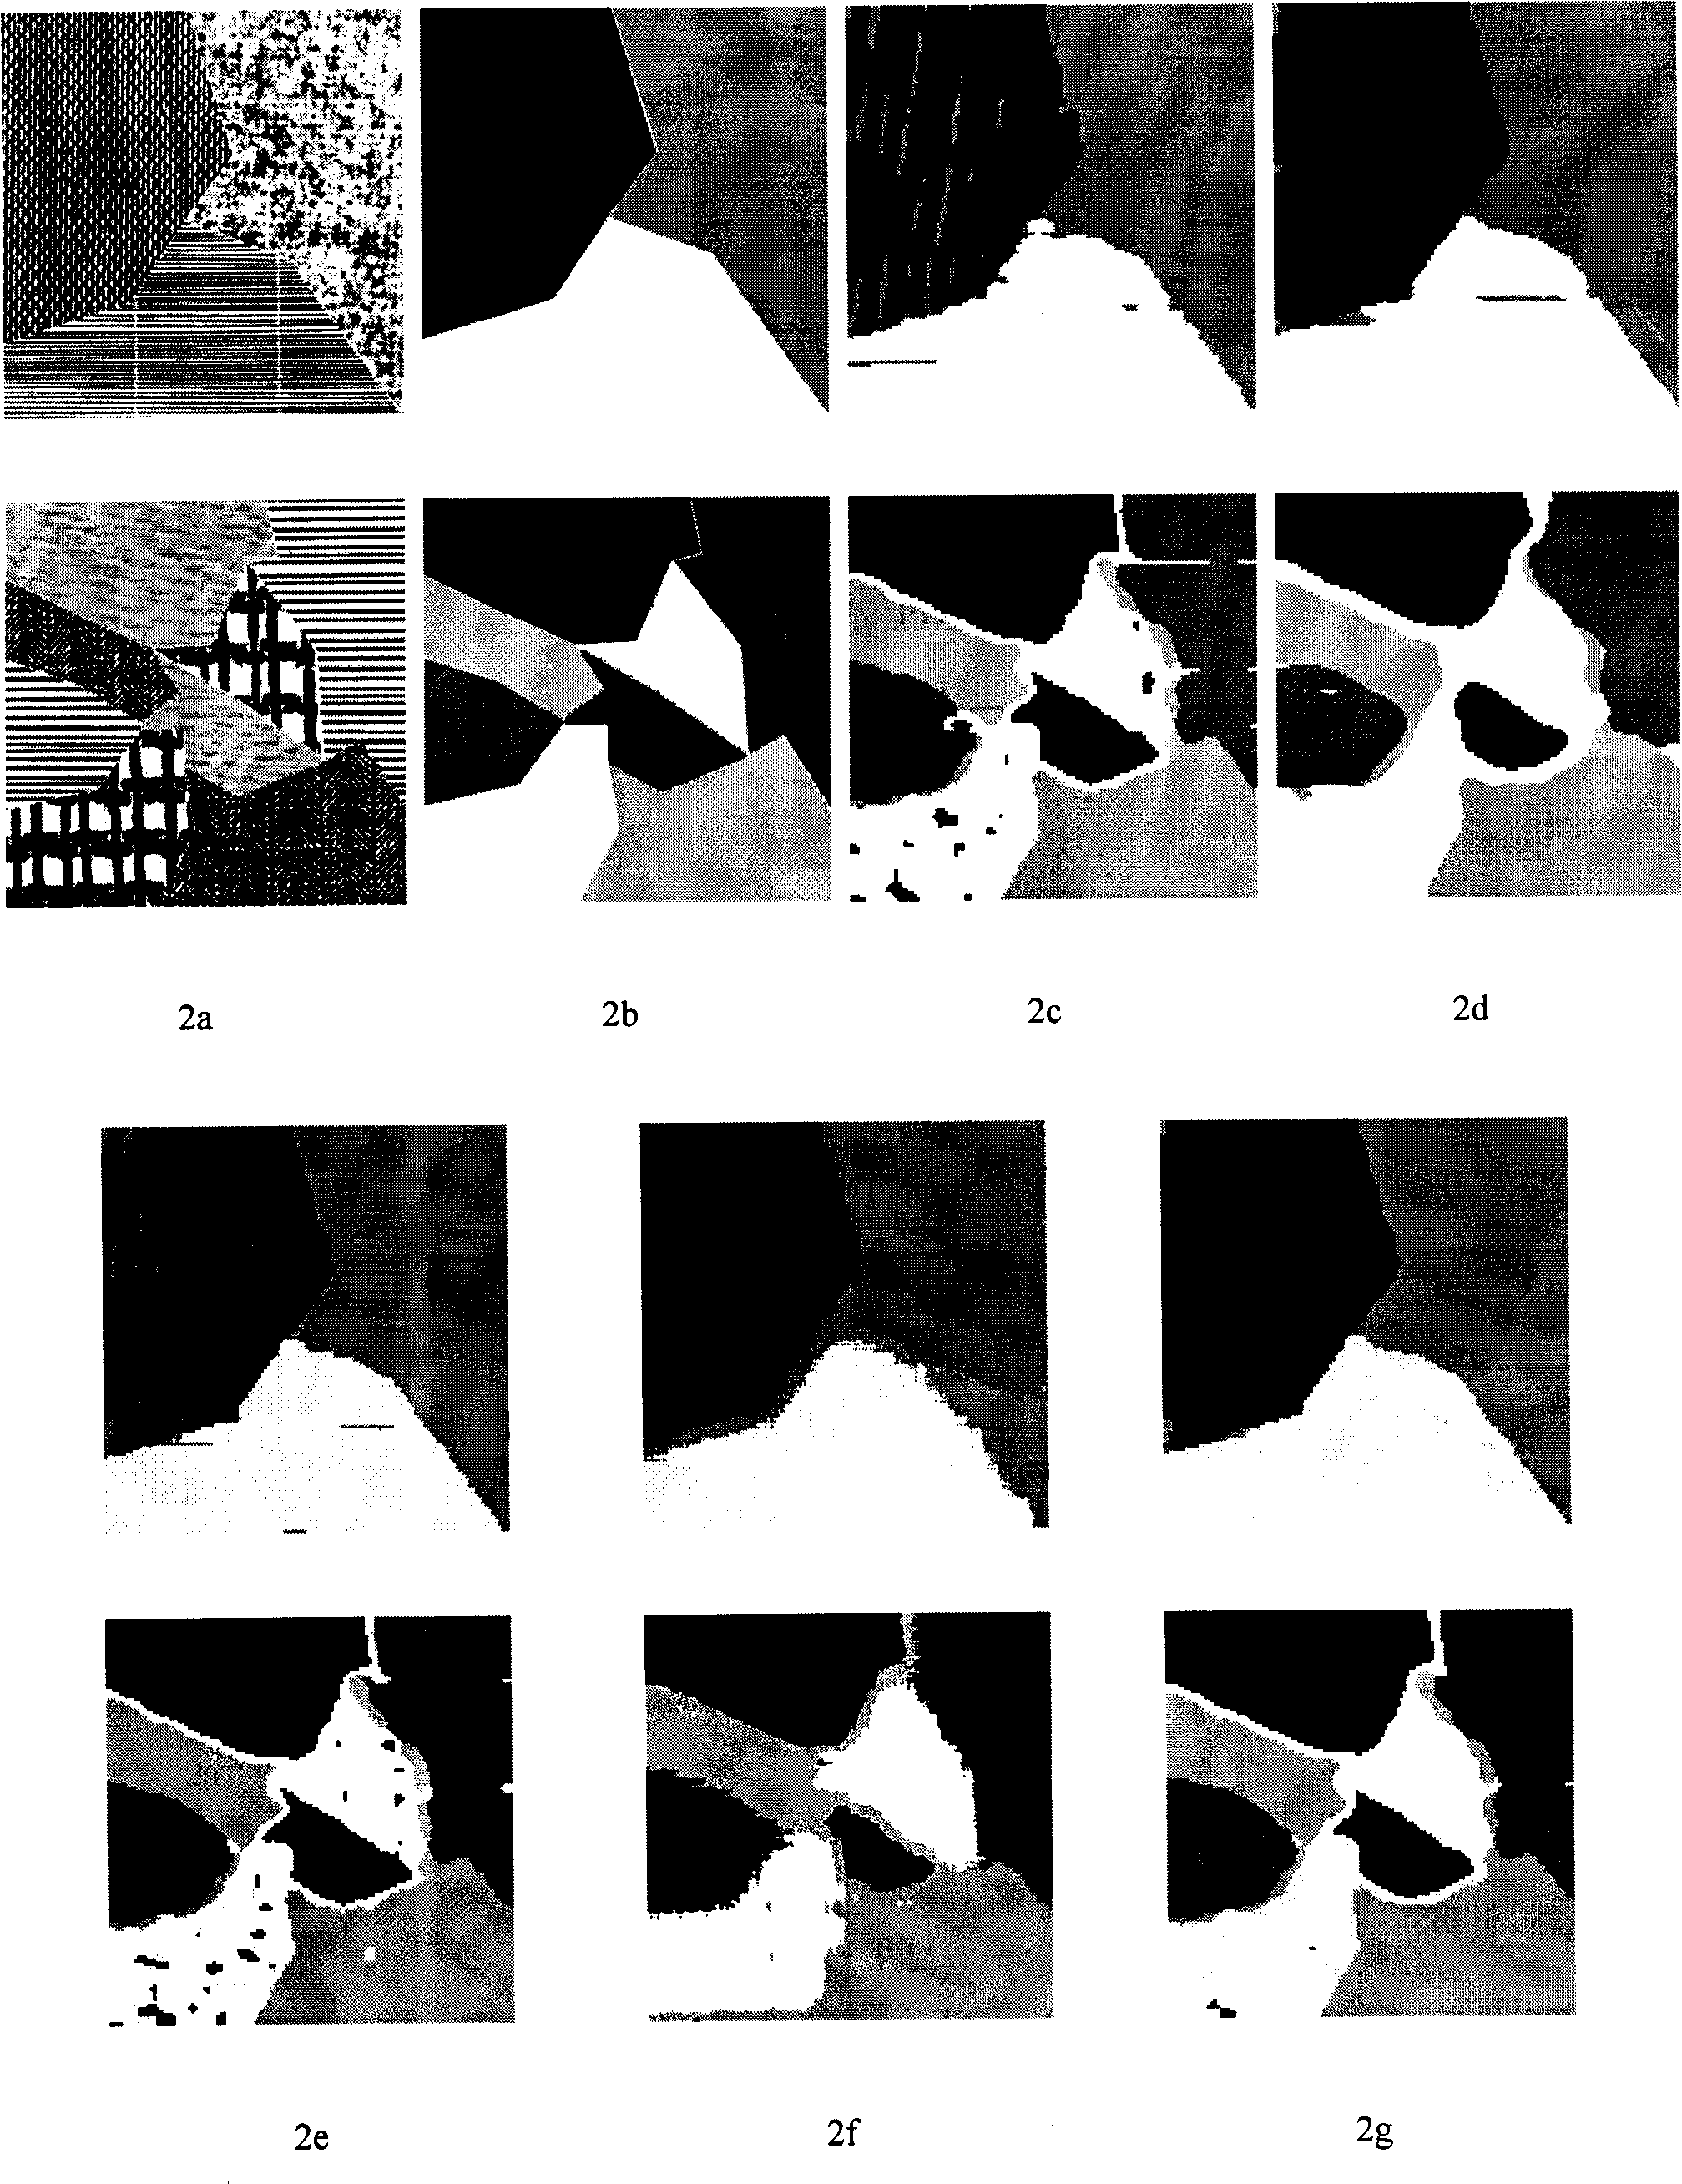 Multiscale SAR image segmentation method based on semi-supervised learning